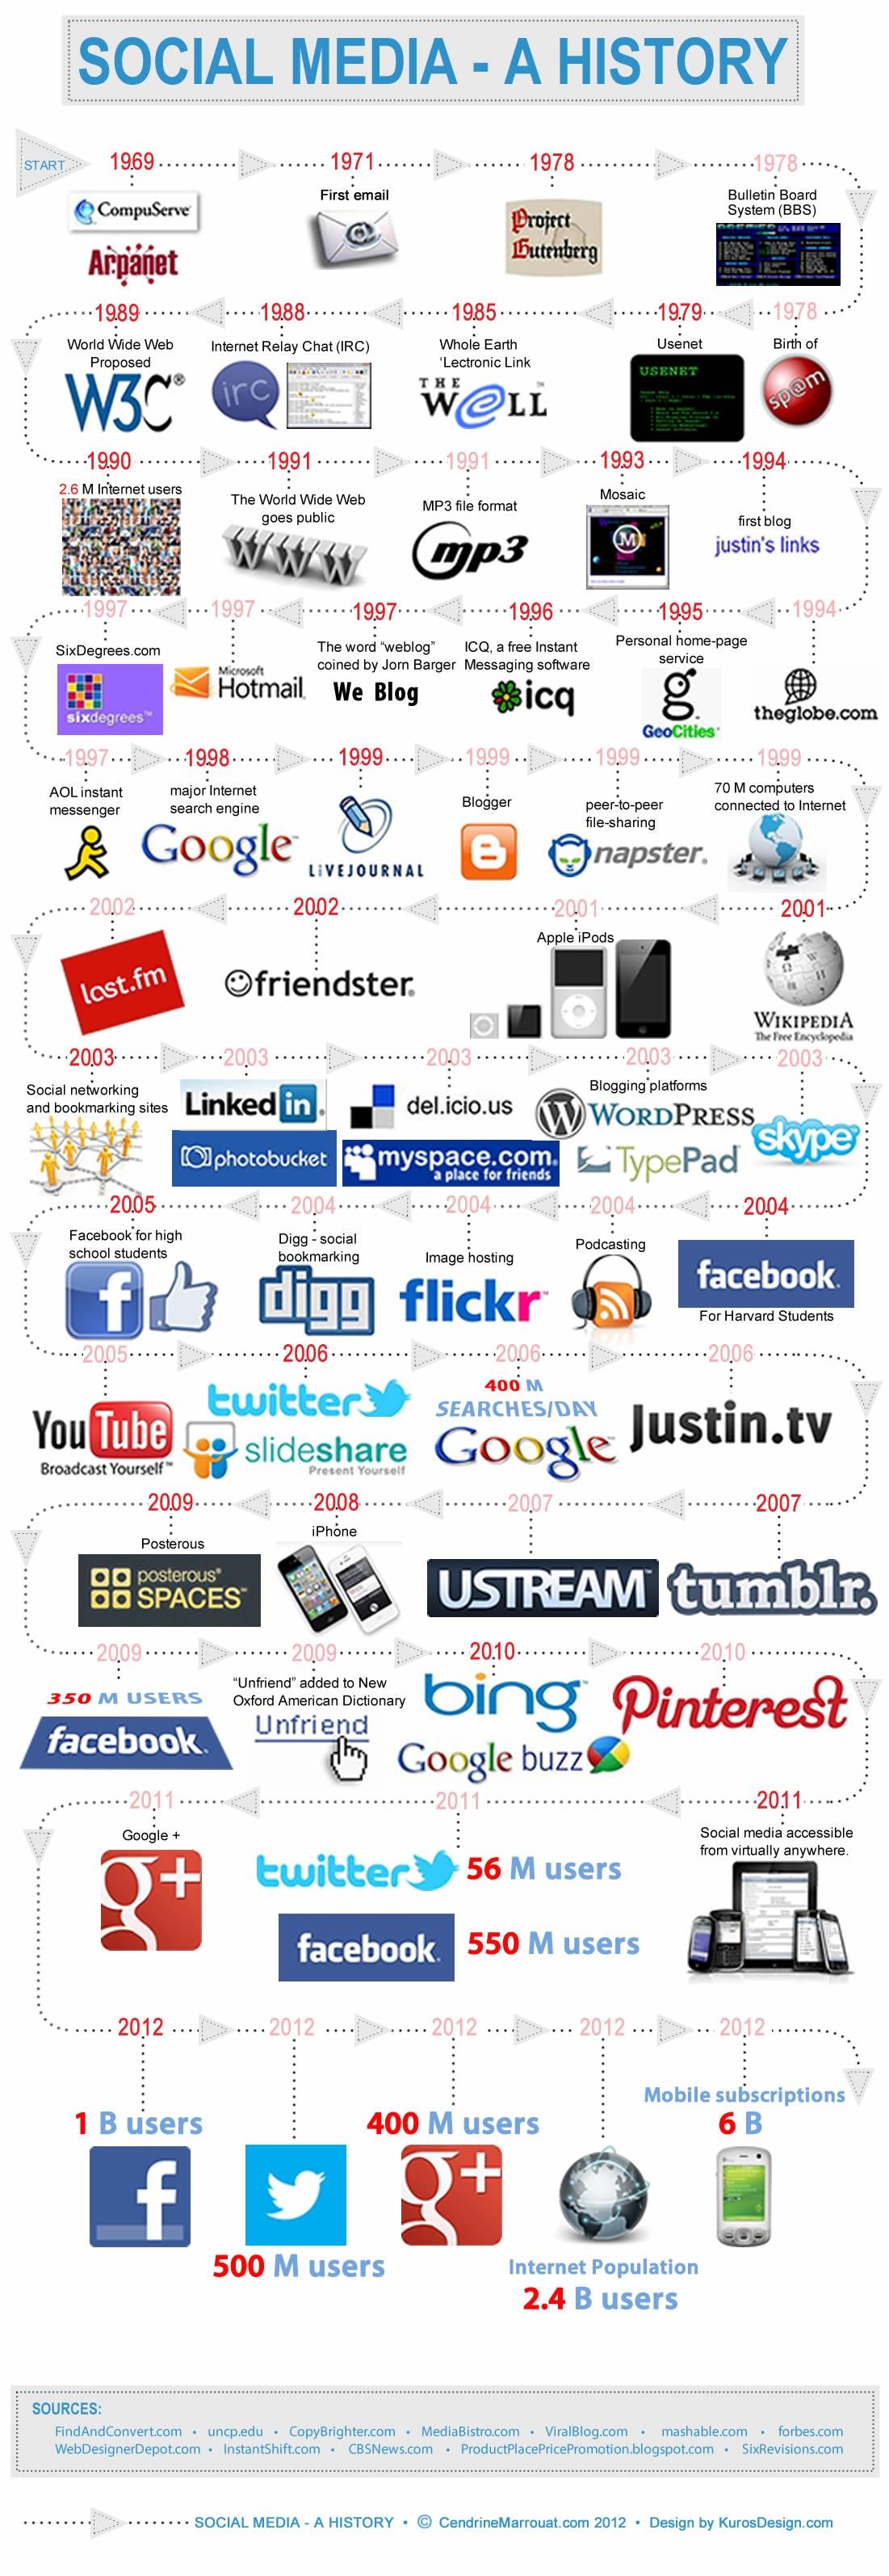 Historia de las redes sociales #Infografía #Internet #SocialMedia